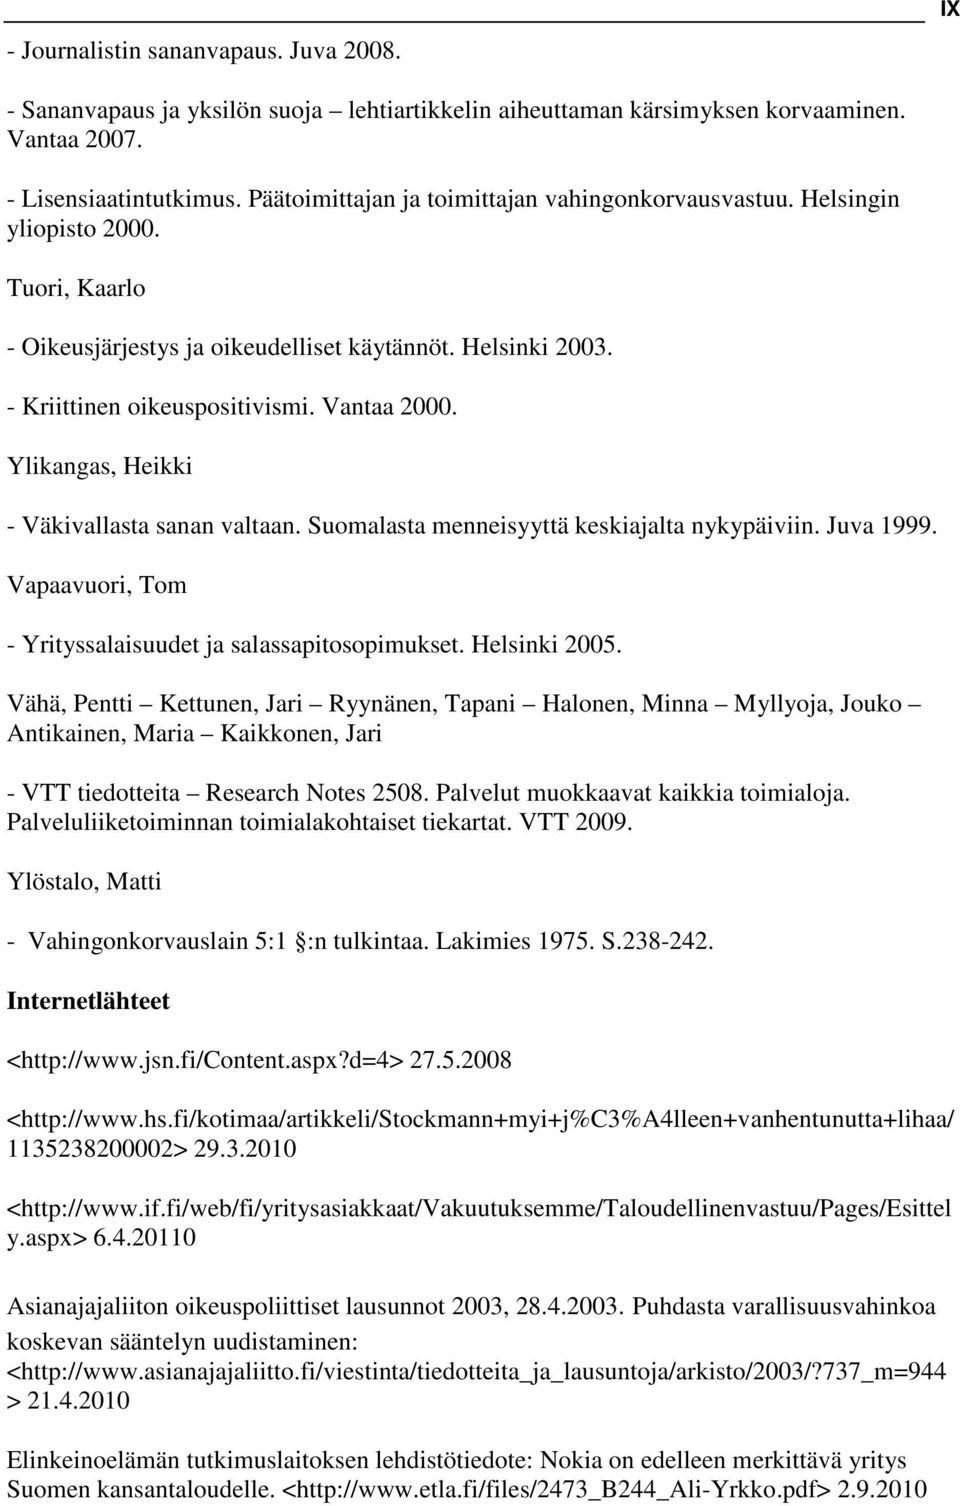 Ylikangas, Heikki - Väkivallasta sanan valtaan. Suomalasta menneisyyttä keskiajalta nykypäiviin. Juva 1999. Vapaavuori, Tom - Yrityssalaisuudet ja salassapitosopimukset. Helsinki 2005.